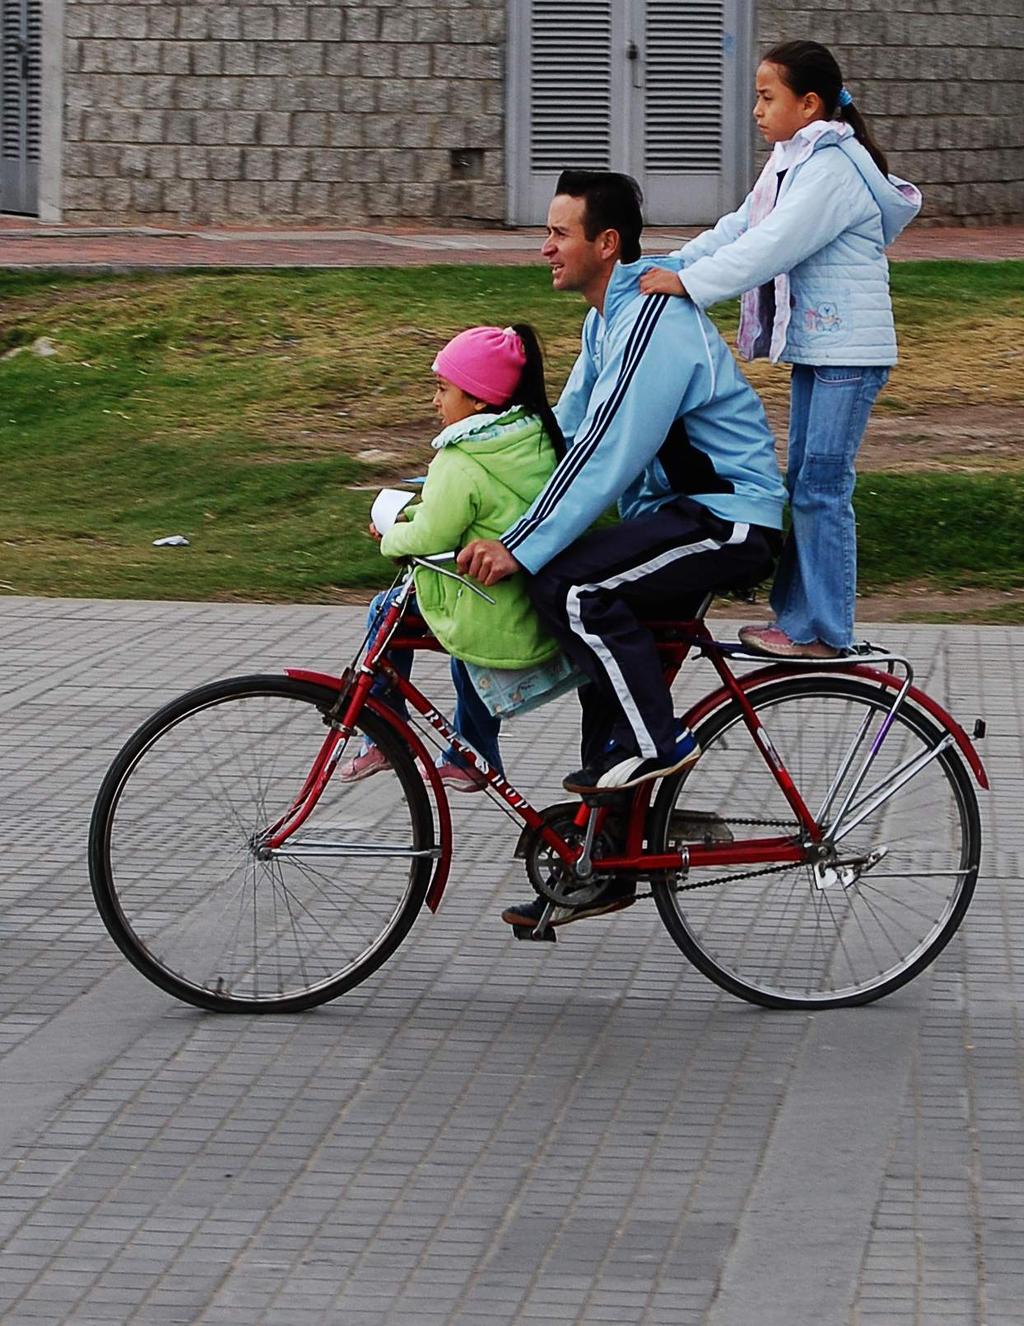 Las Cuentas de la Bici en Bogotá 2014 proporciona datos oportunos acerca del estado de la infraestructura para la bicicleta y su uso en Bogotá, además de dar a conocer los resultados de encuestas de